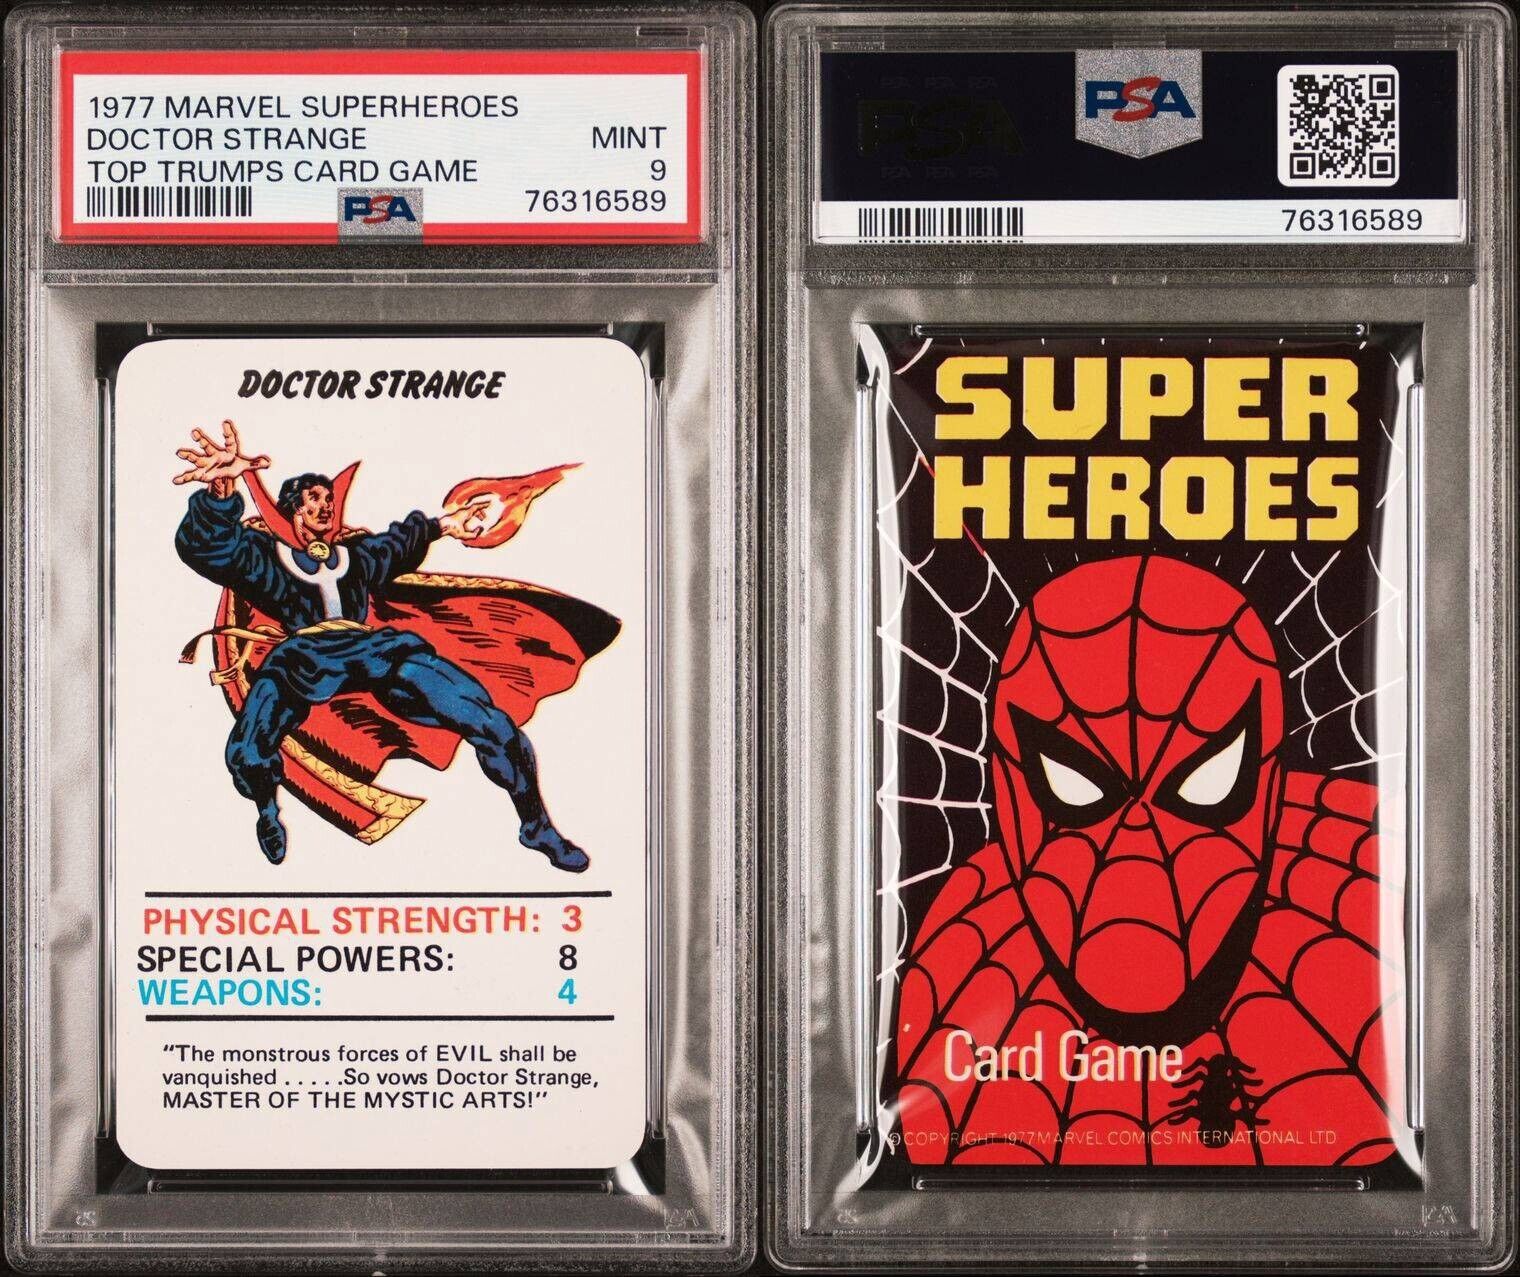 1977 MARVEL SUPERHEROES DOCTOR STRANGE TOP TRUMPS CARD GAME PSA 9 MINT POP 1